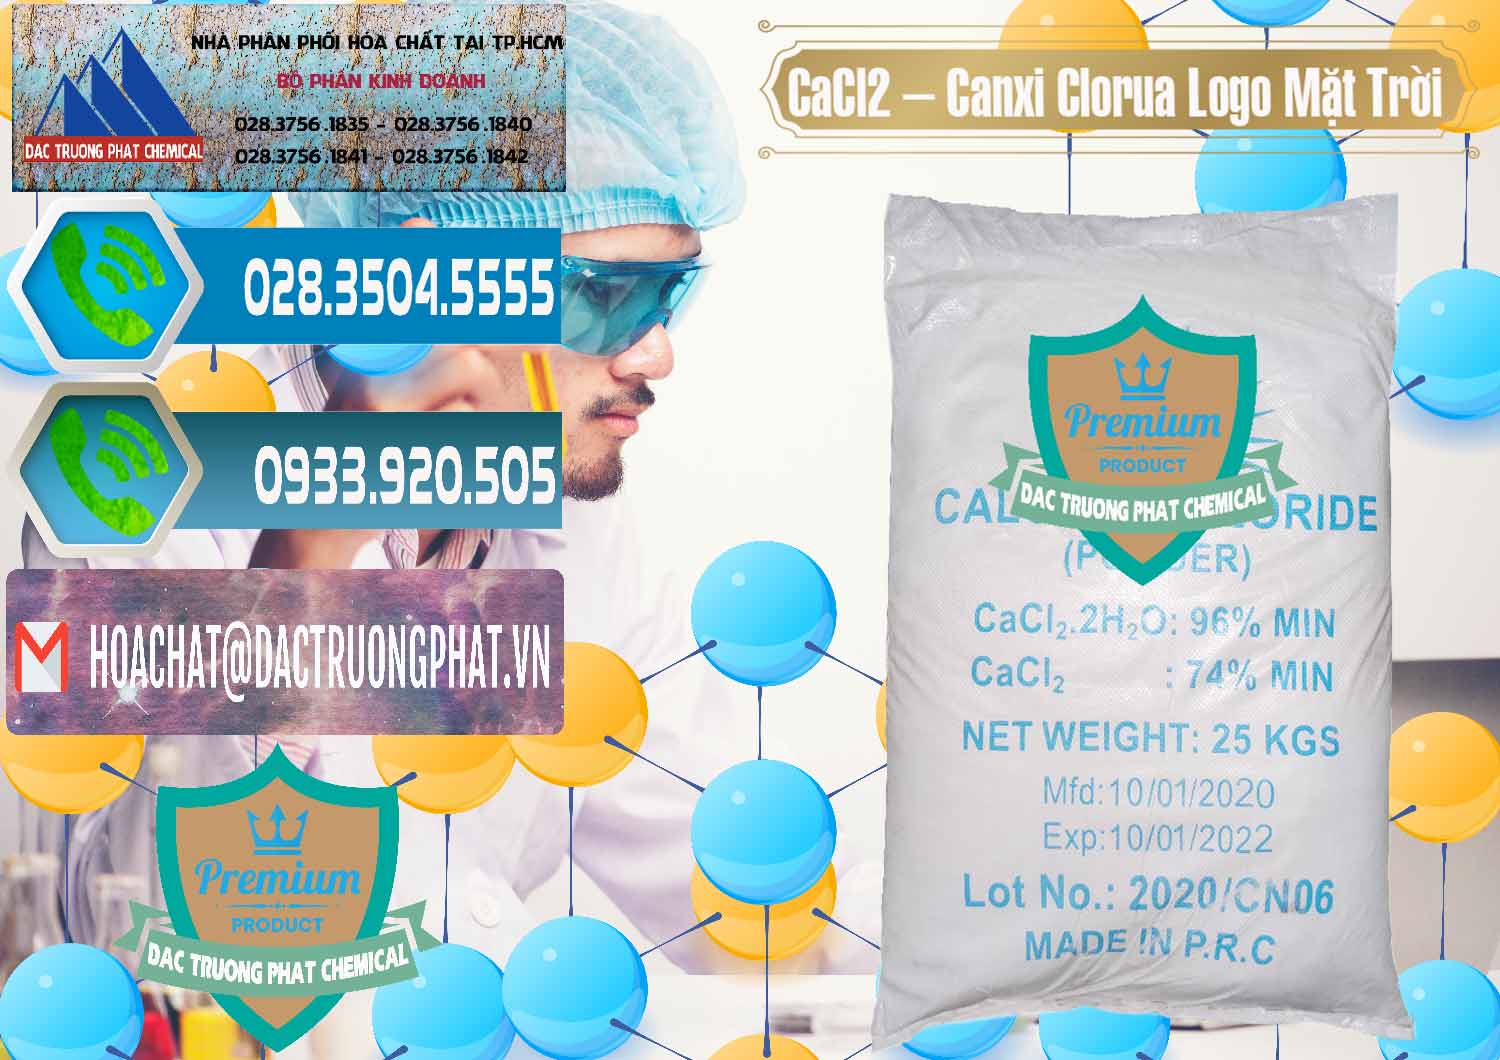 Đơn vị chuyên bán & cung cấp CaCl2 – Canxi Clorua 96% Logo Mặt Trời Trung Quốc China - 0041 - Cty phân phối _ bán hóa chất tại TP.HCM - congtyhoachat.net